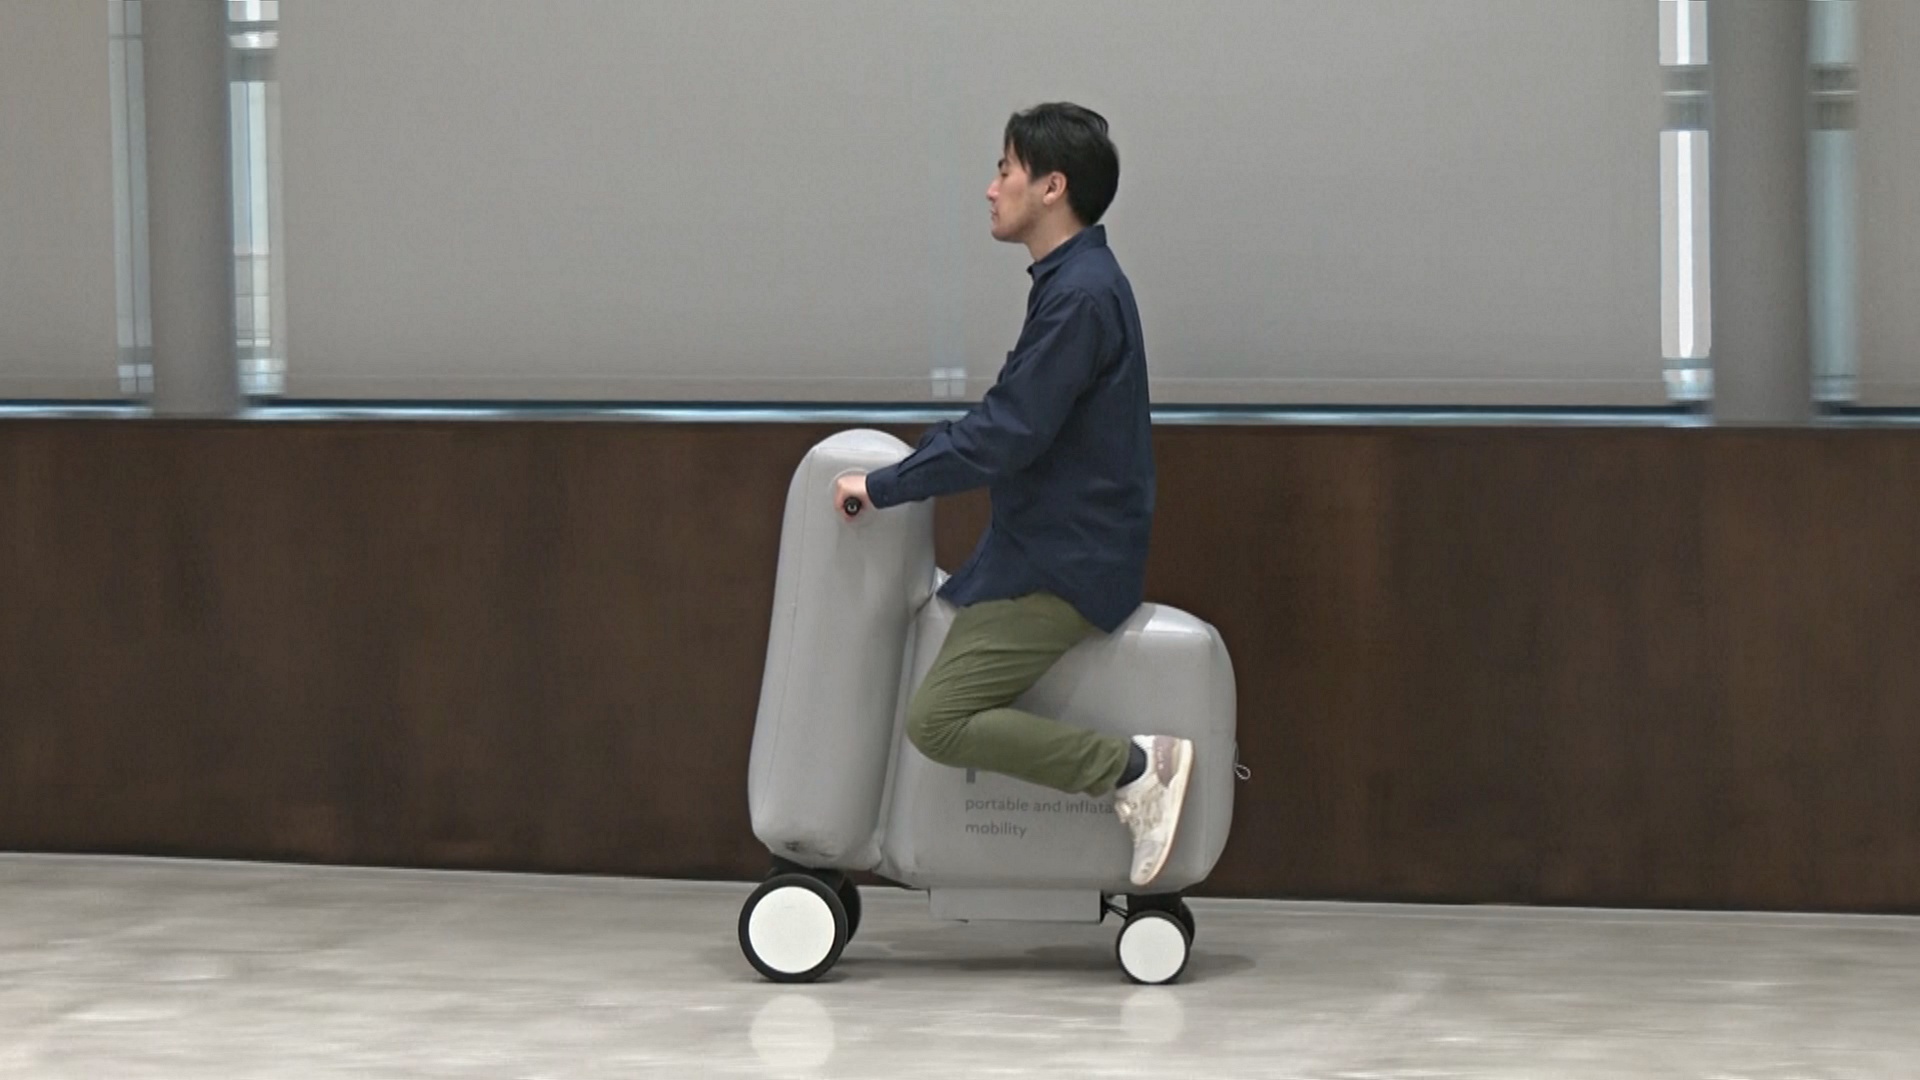 Надувной скутер-чемодан придумали в Японии — Новости мира сегодня  NTDНовости мира сегодня NTD